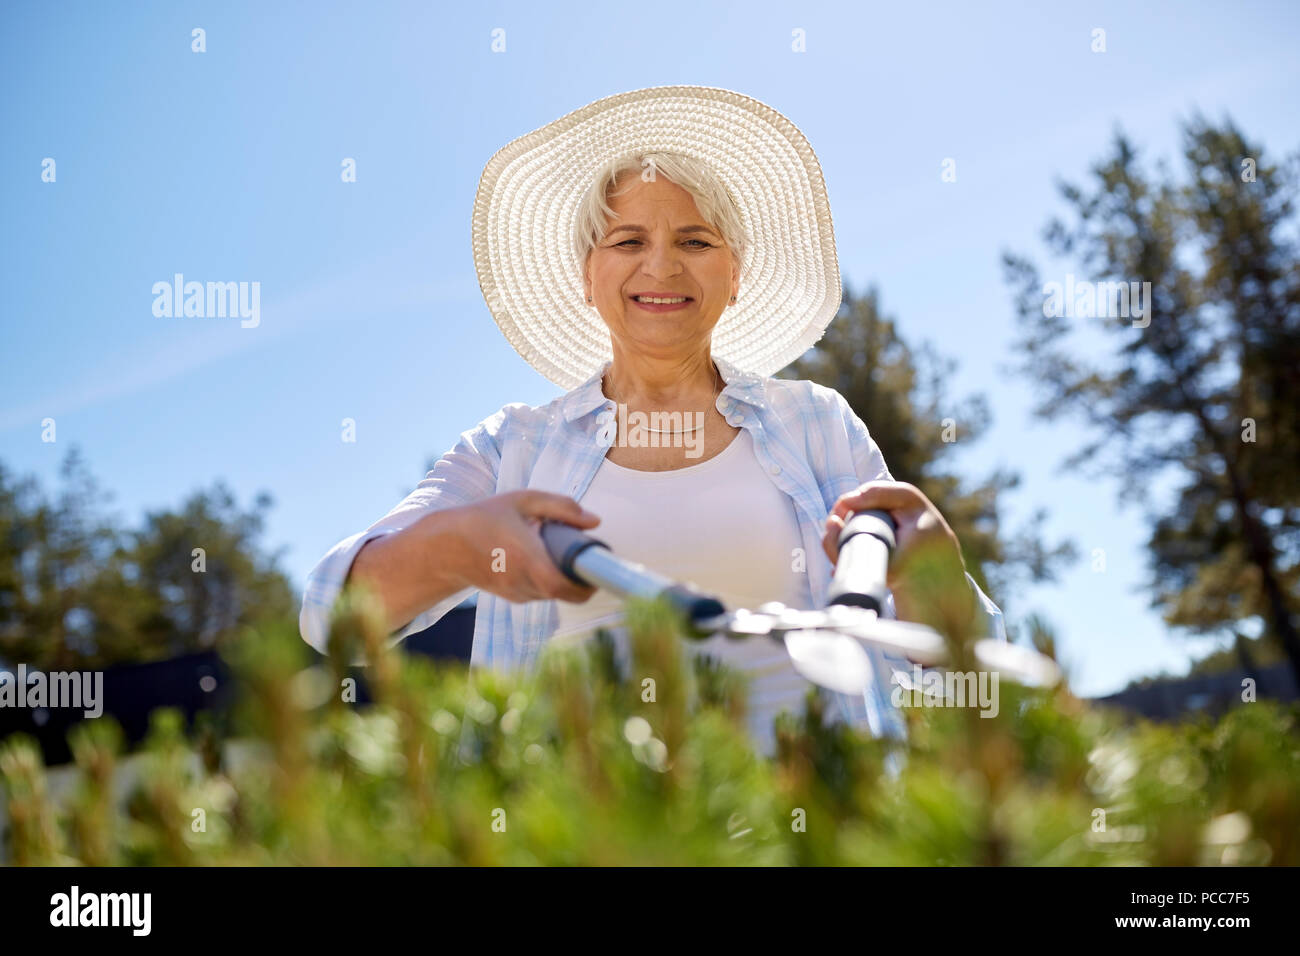 Senior Gärtner mit der Heckenschere garden Stockfoto